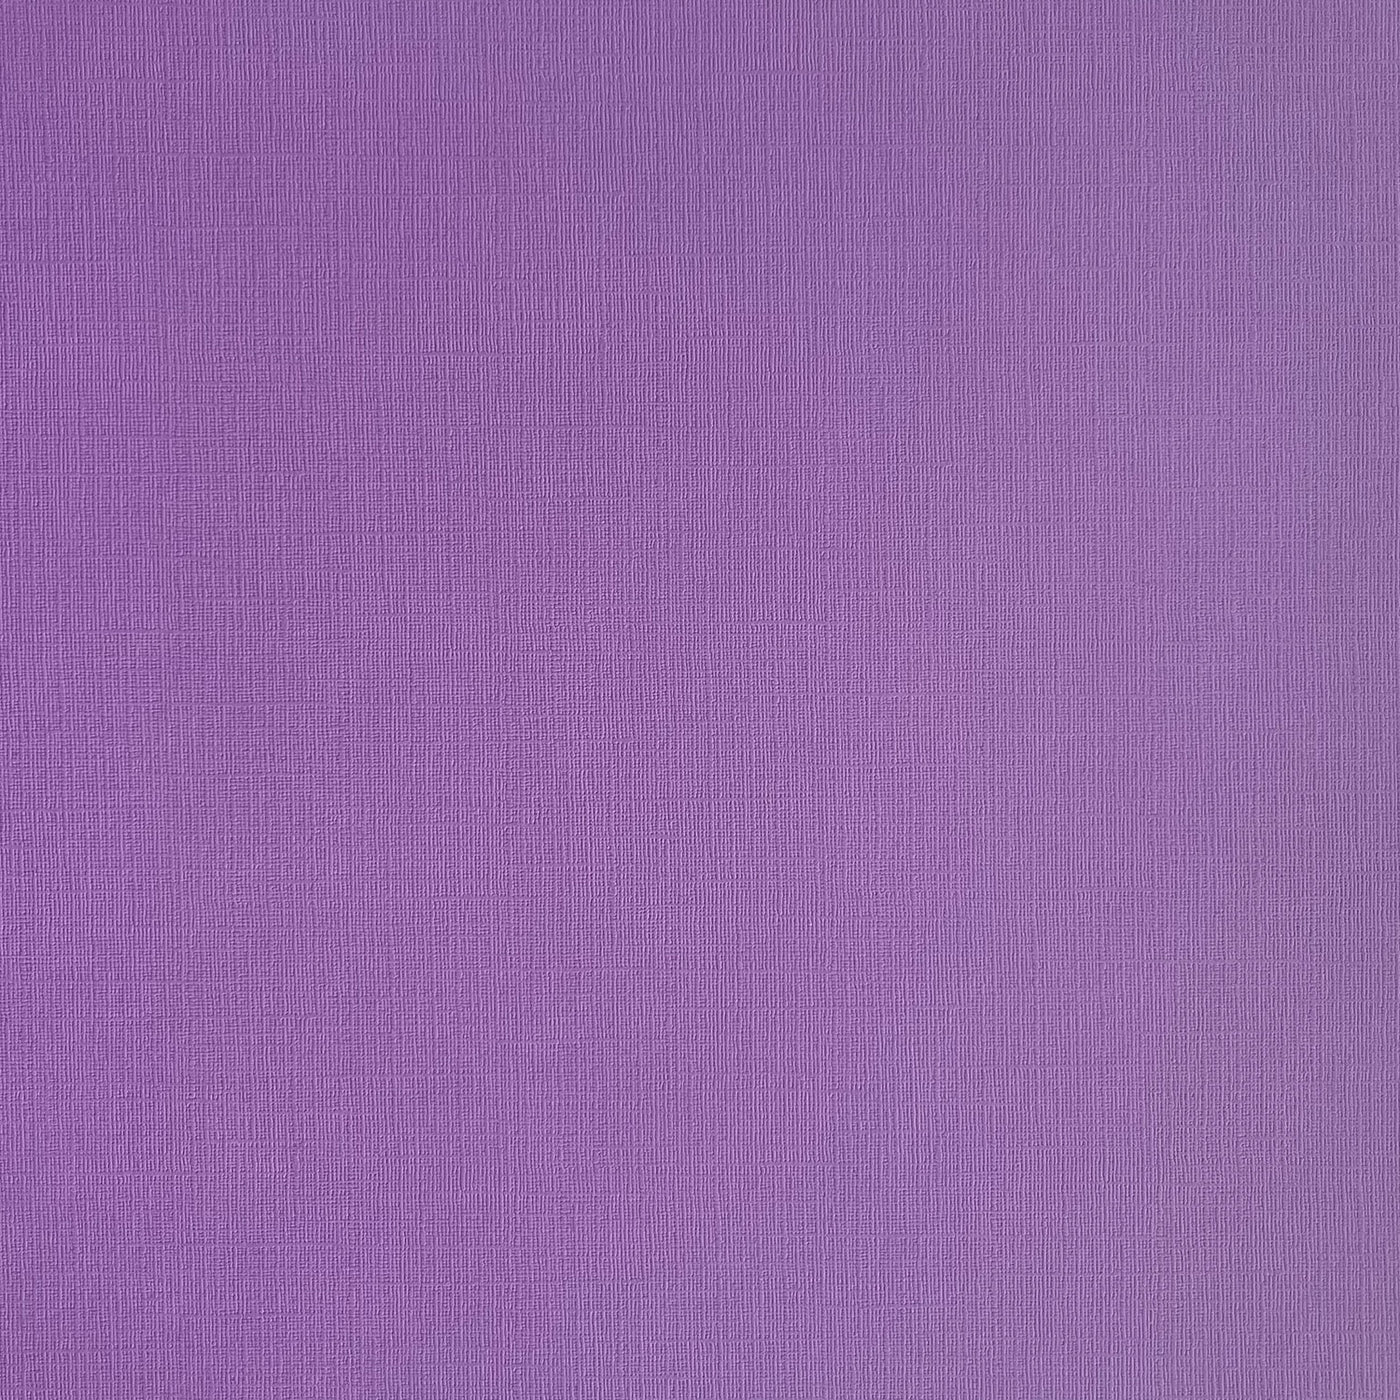 Wild Flower - Textured 12x12 Cardstock - Amythest purple canvas scrapbook paper